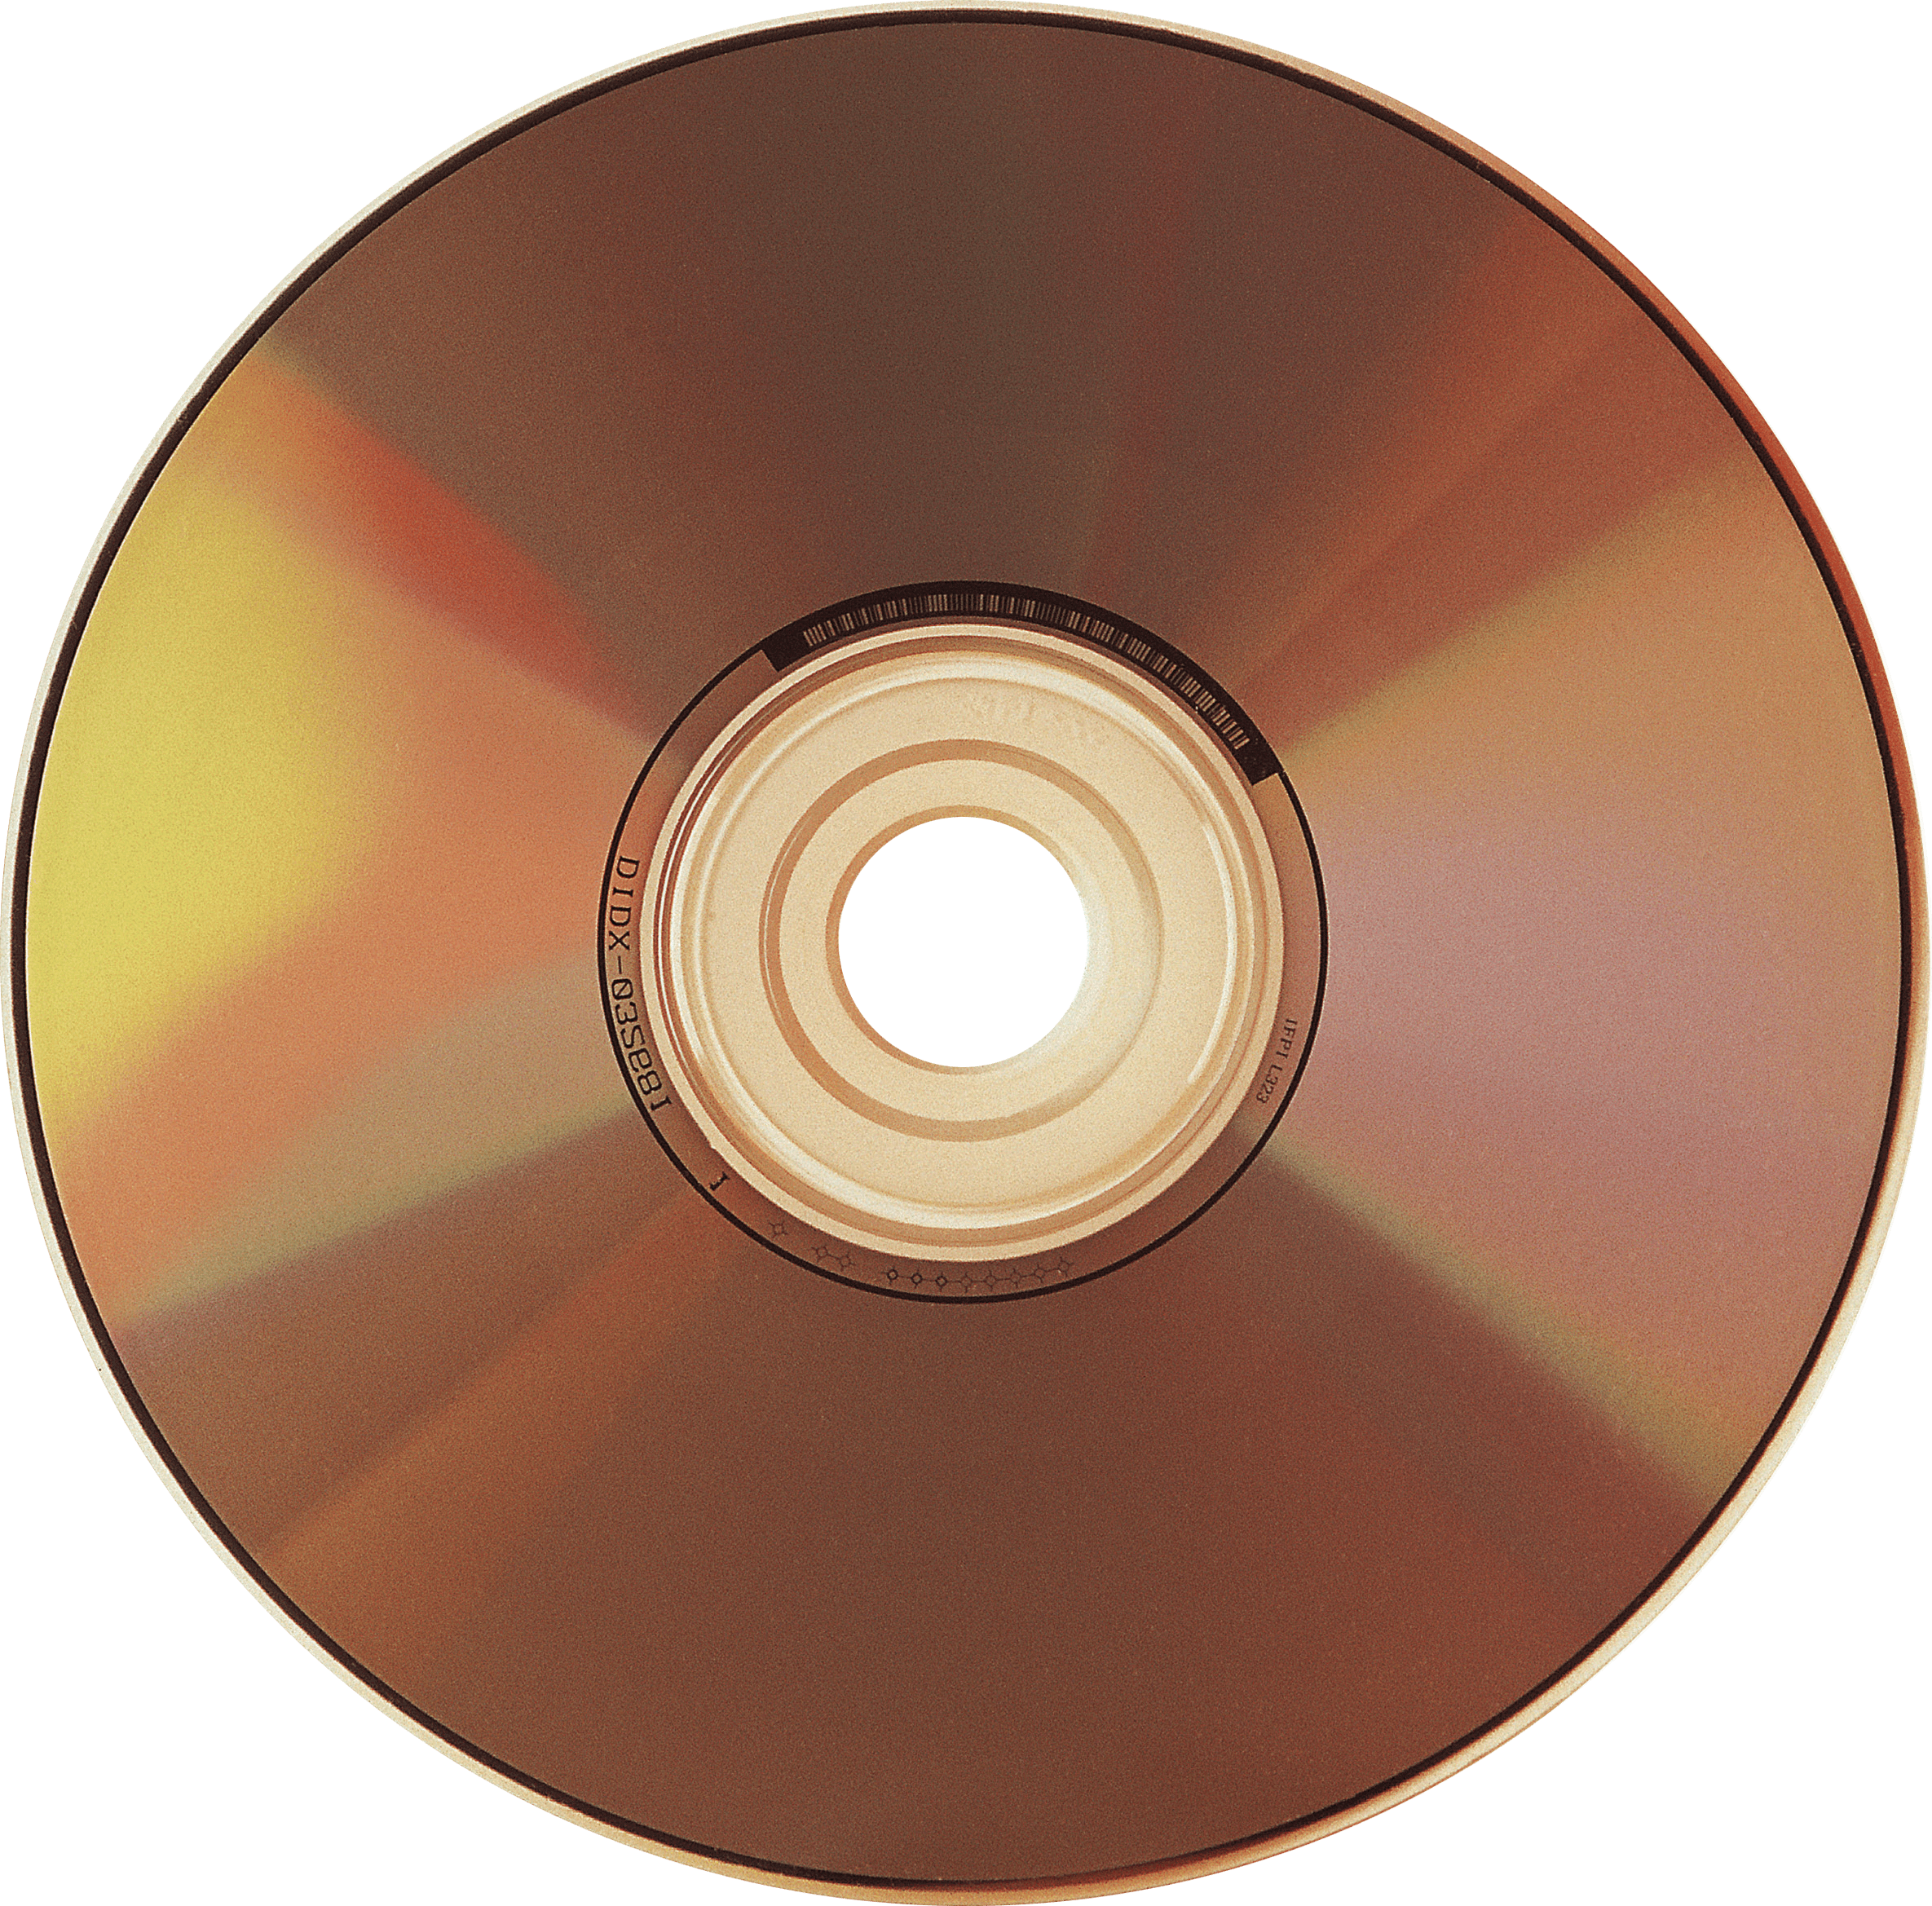 Cd user. CD - Compact Disk (компакт диск). CD (Compact Disc) — оптический носитель. CD-R DVD. Диски а..